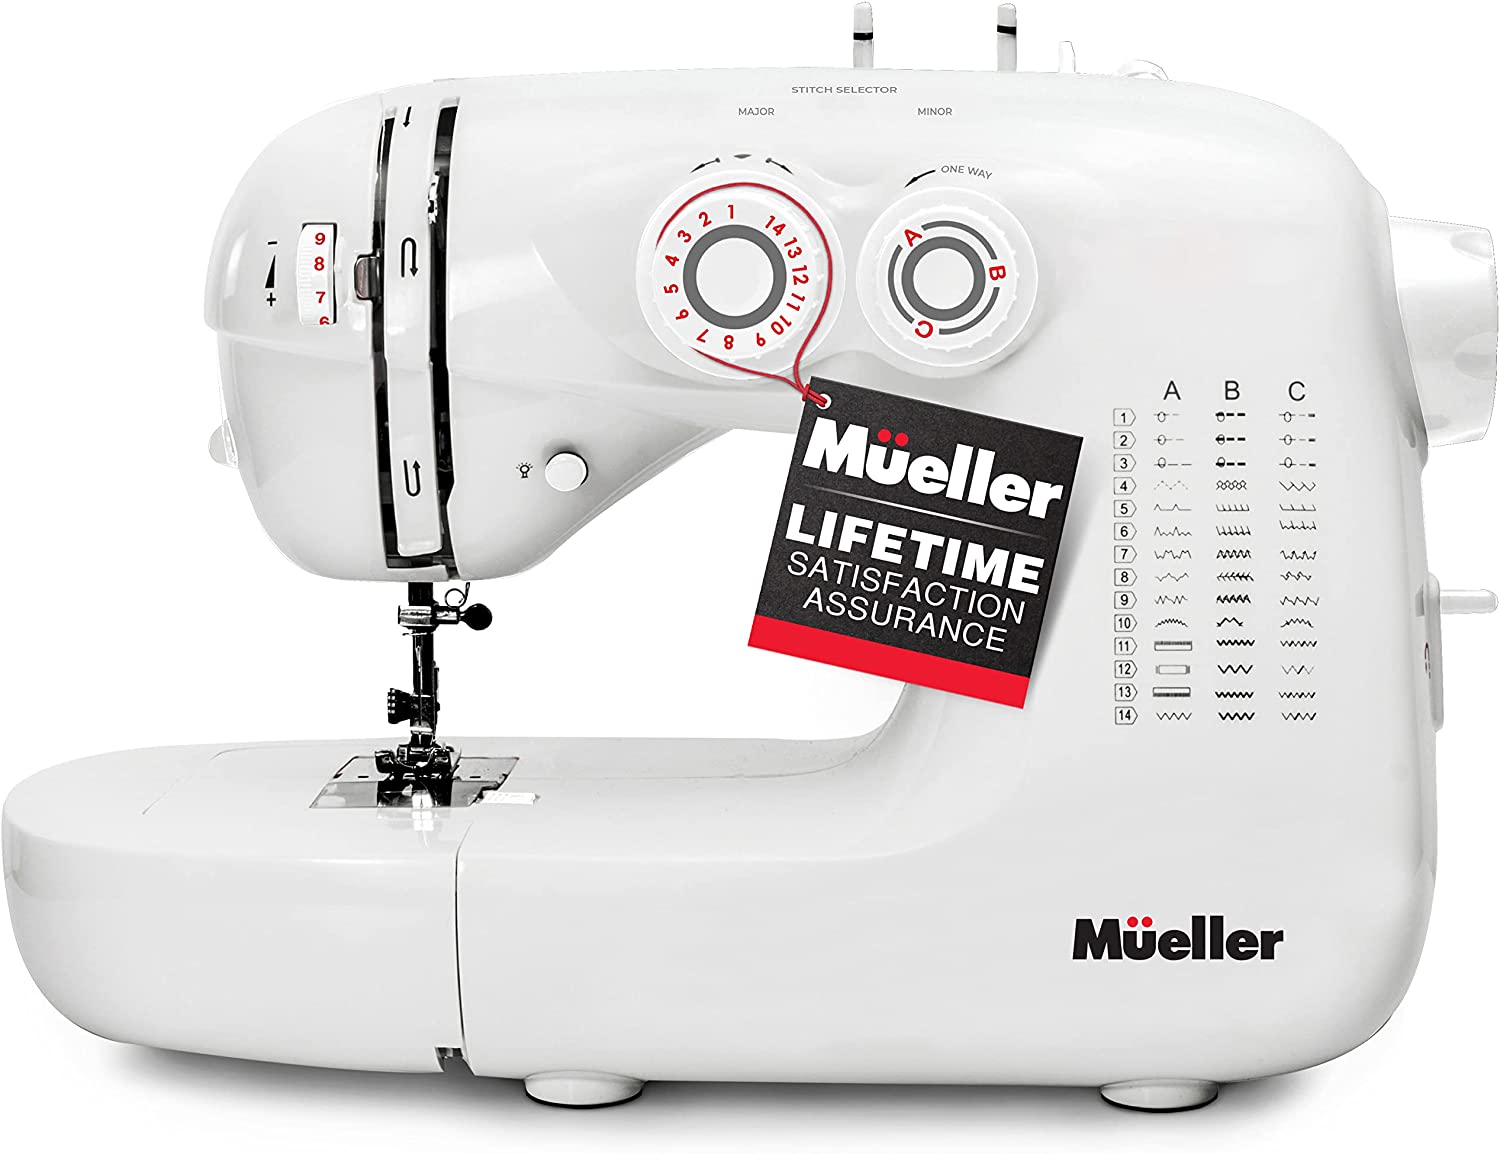 Mueller Ultra Stitch Sewing Machine